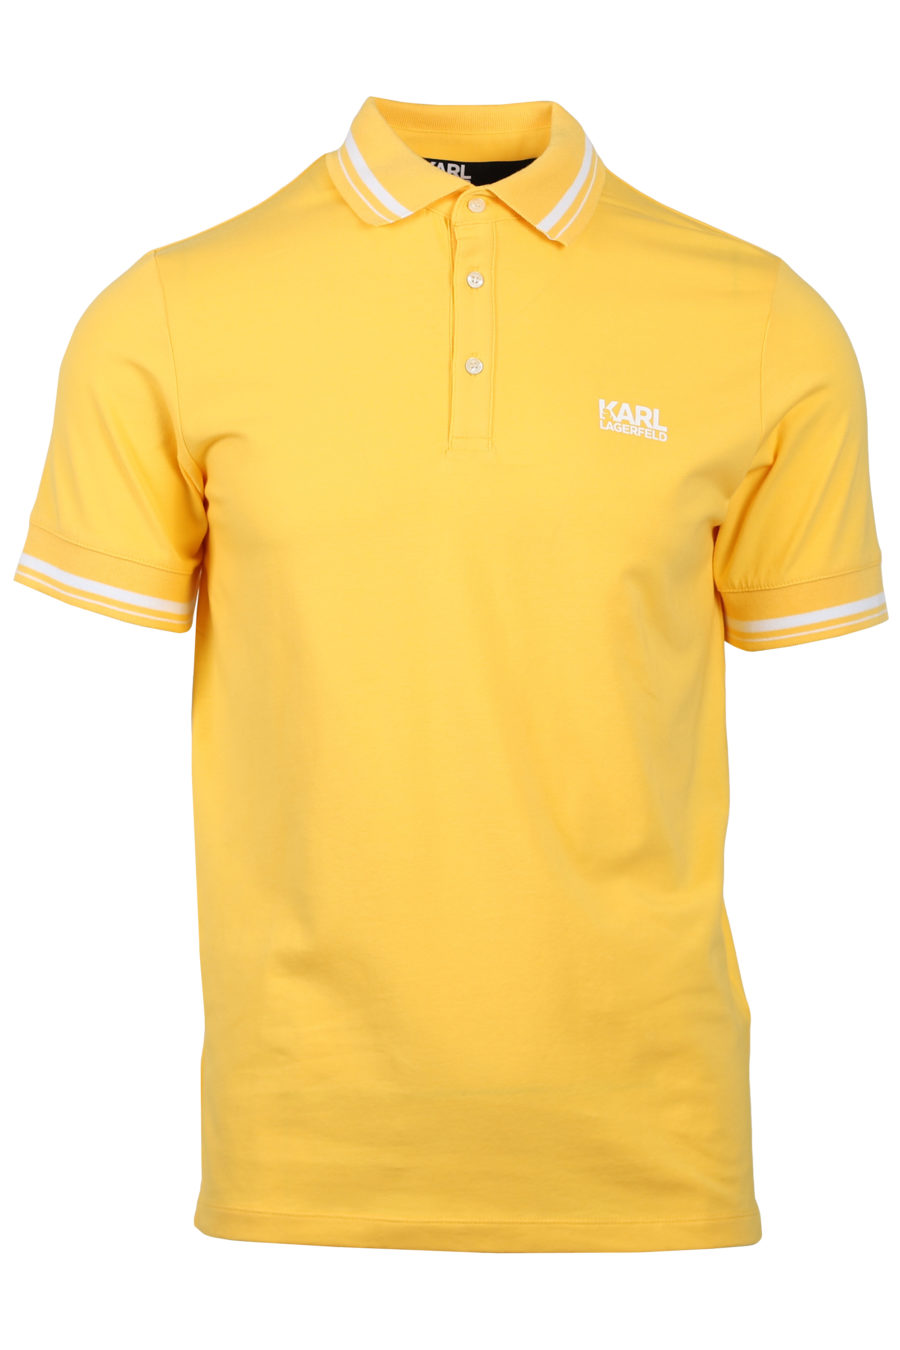 Polo jaune logo blanc - IMG 2027